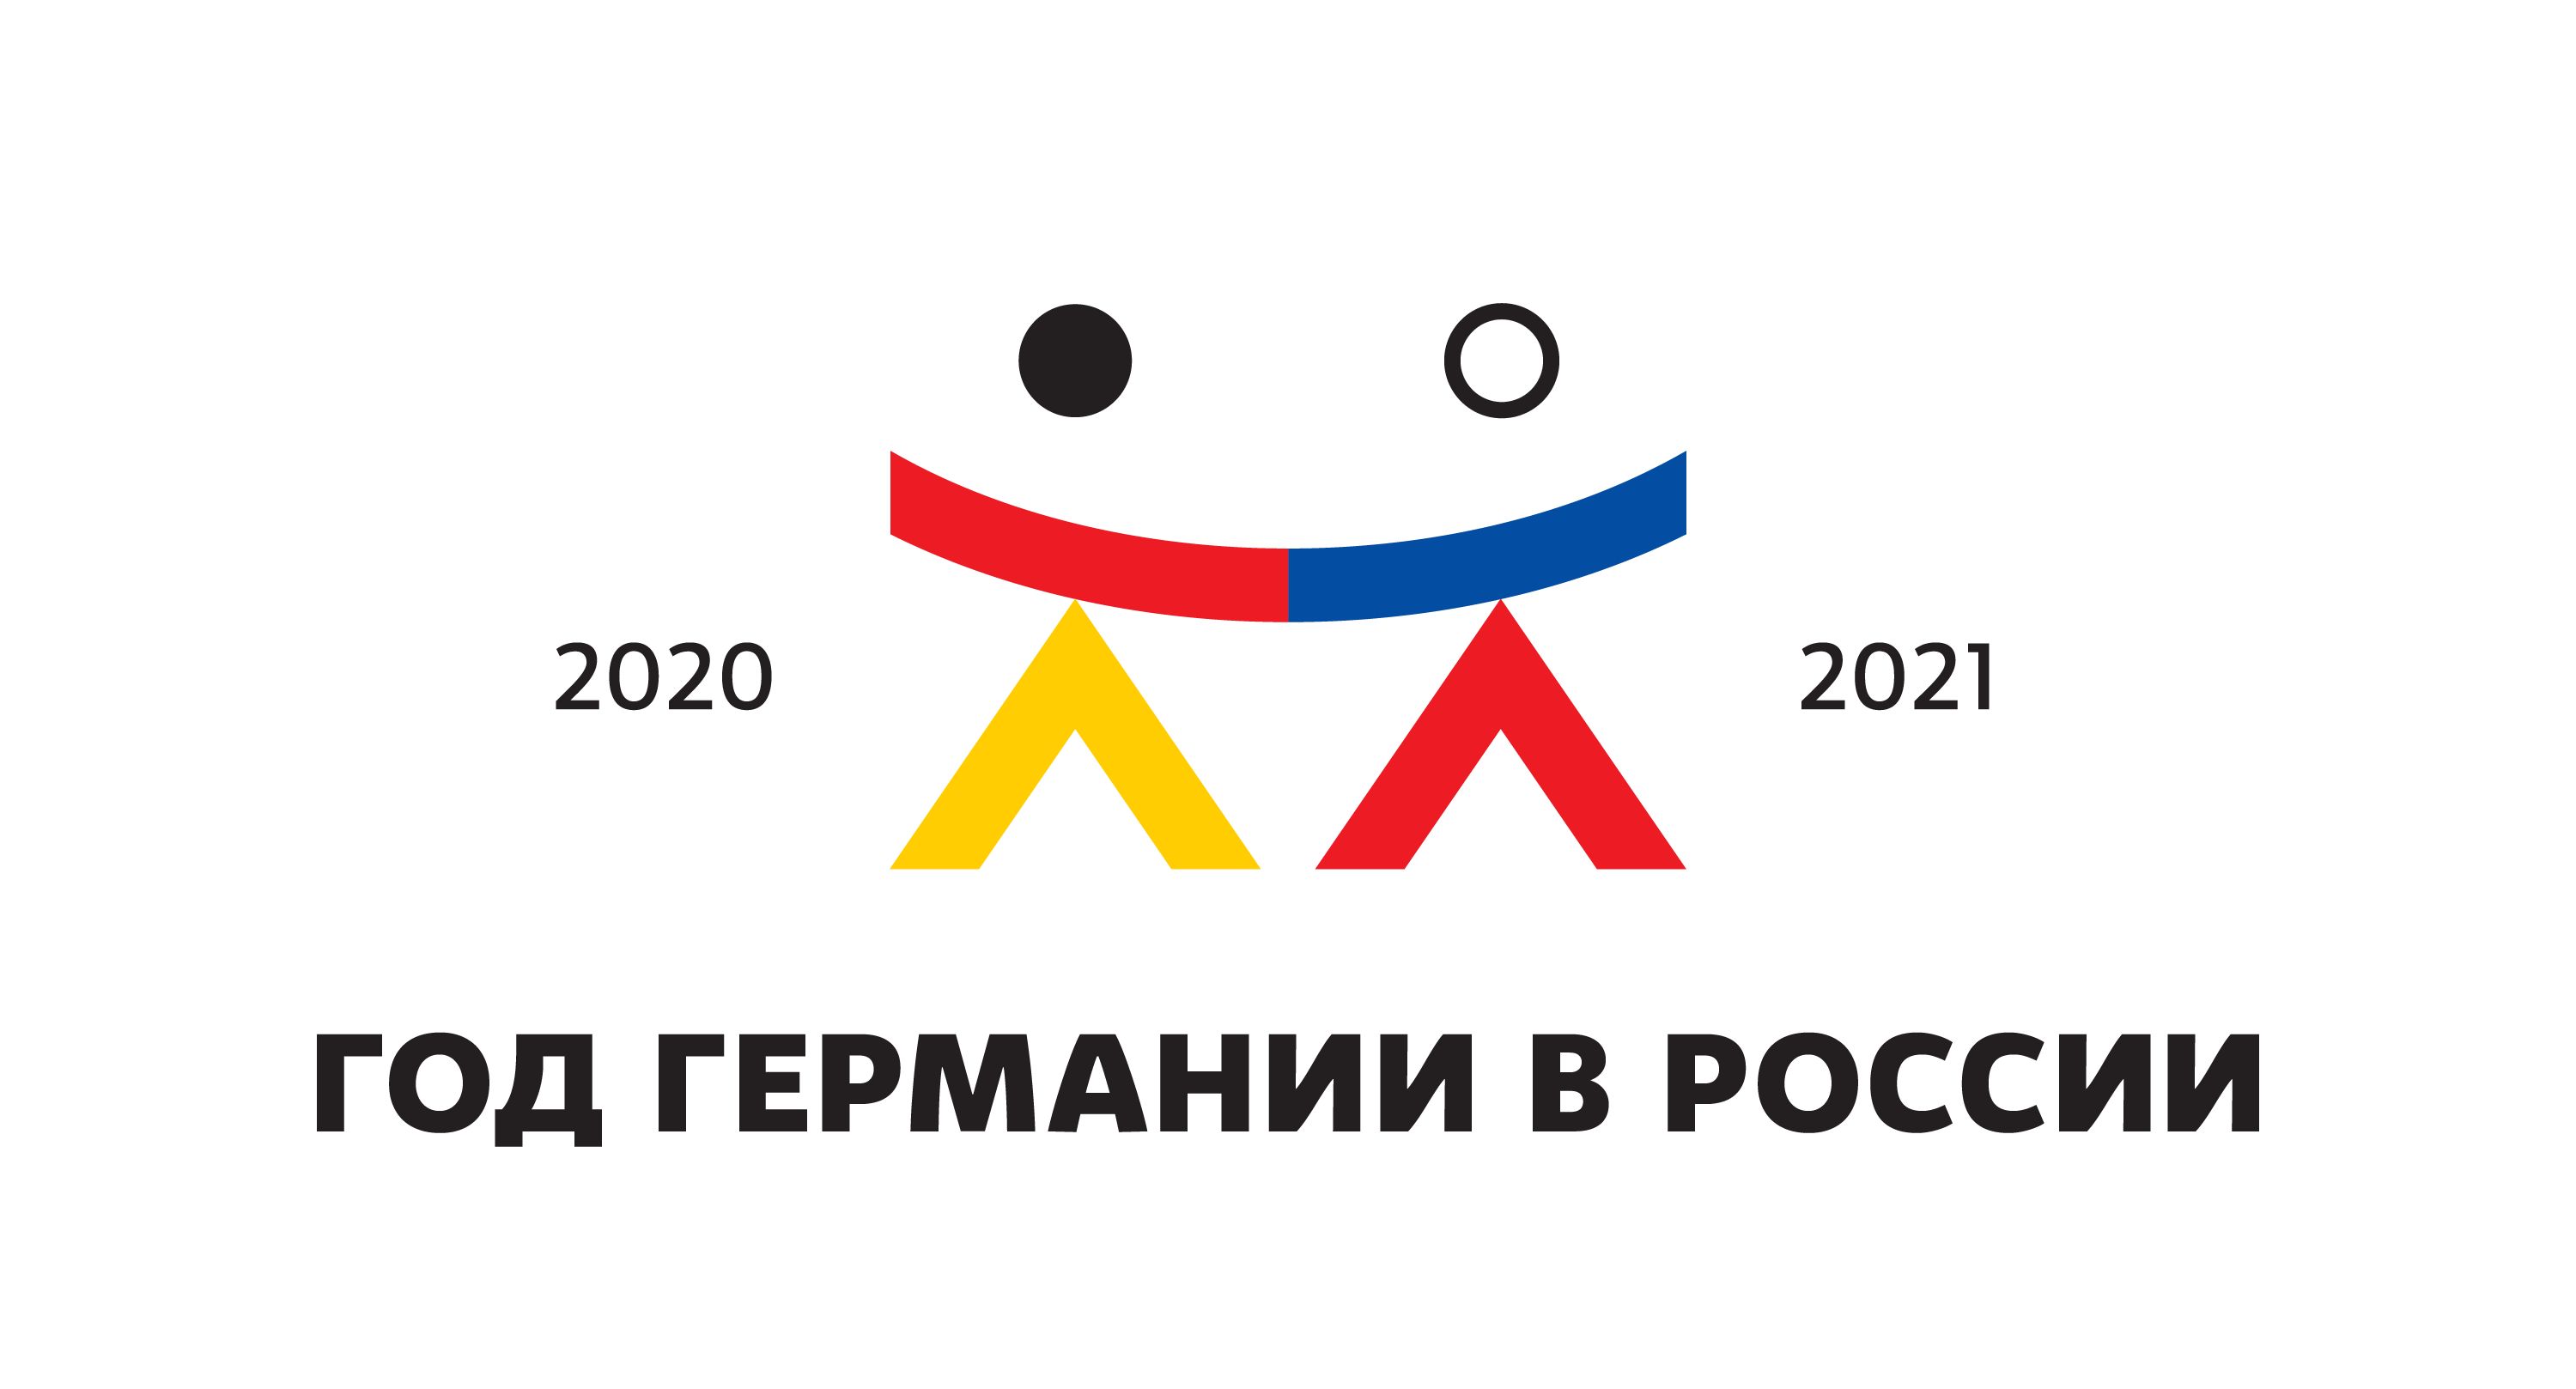 Гет рф. Год Германии в России. Год Германии в России логотип. Россия и Германия Дружба. Германия 2020 год.